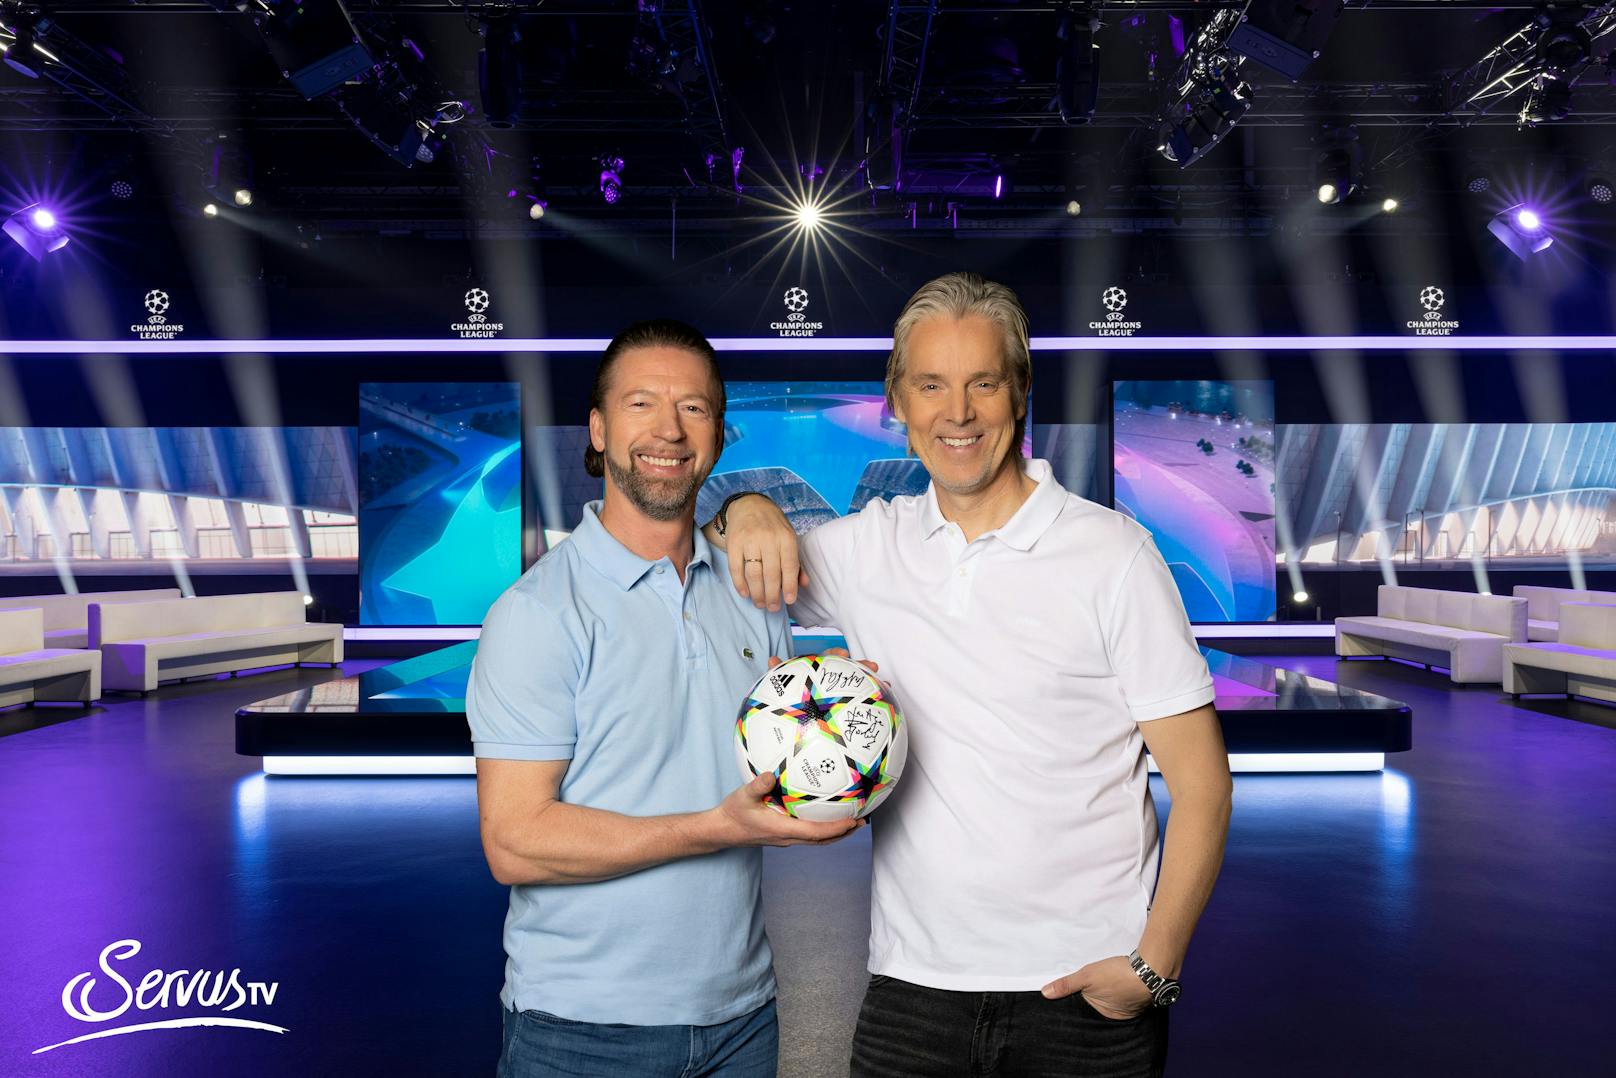 Der original UEFA-Champions-League-Ball ist von den Experten Steffen Freund (links im Bild) und Jan Aage Fjörtoft signiert.